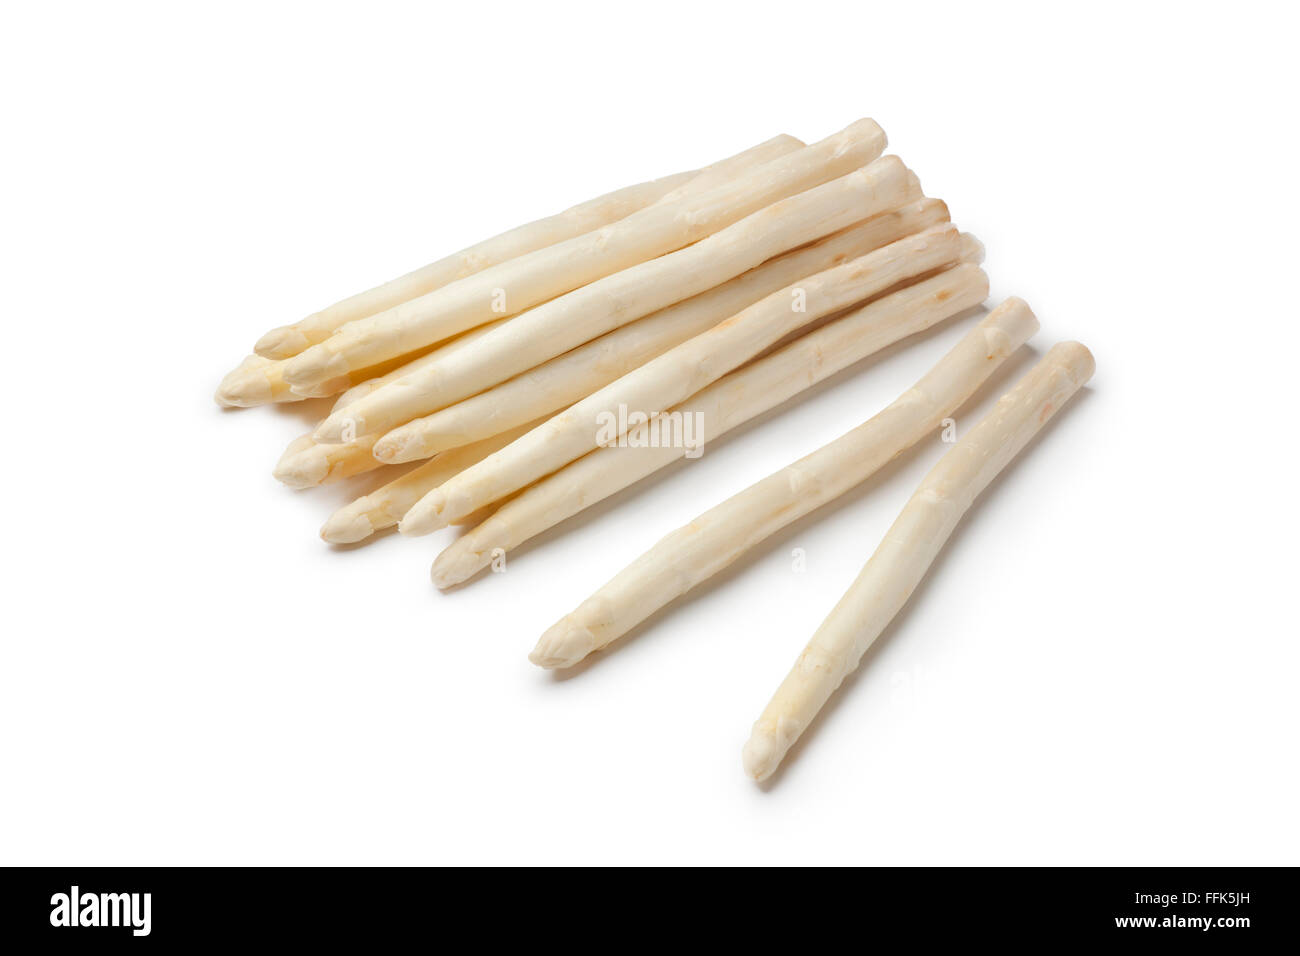 Freschi asparagi bianchi steli su sfondo bianco Foto Stock